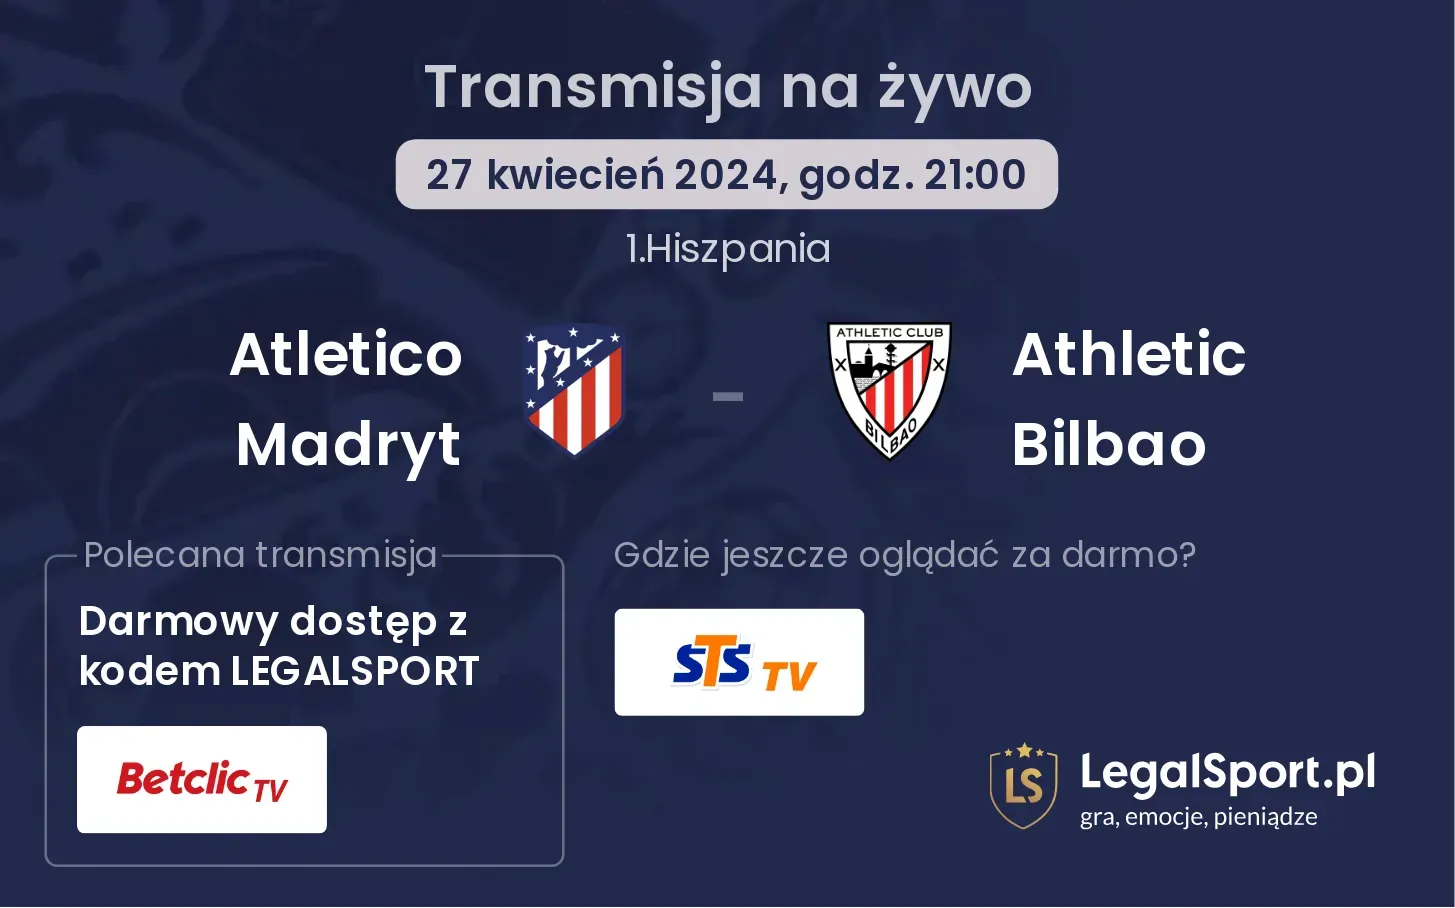 Atletico Madryt - Athletic Bilbao transmisja na żywo